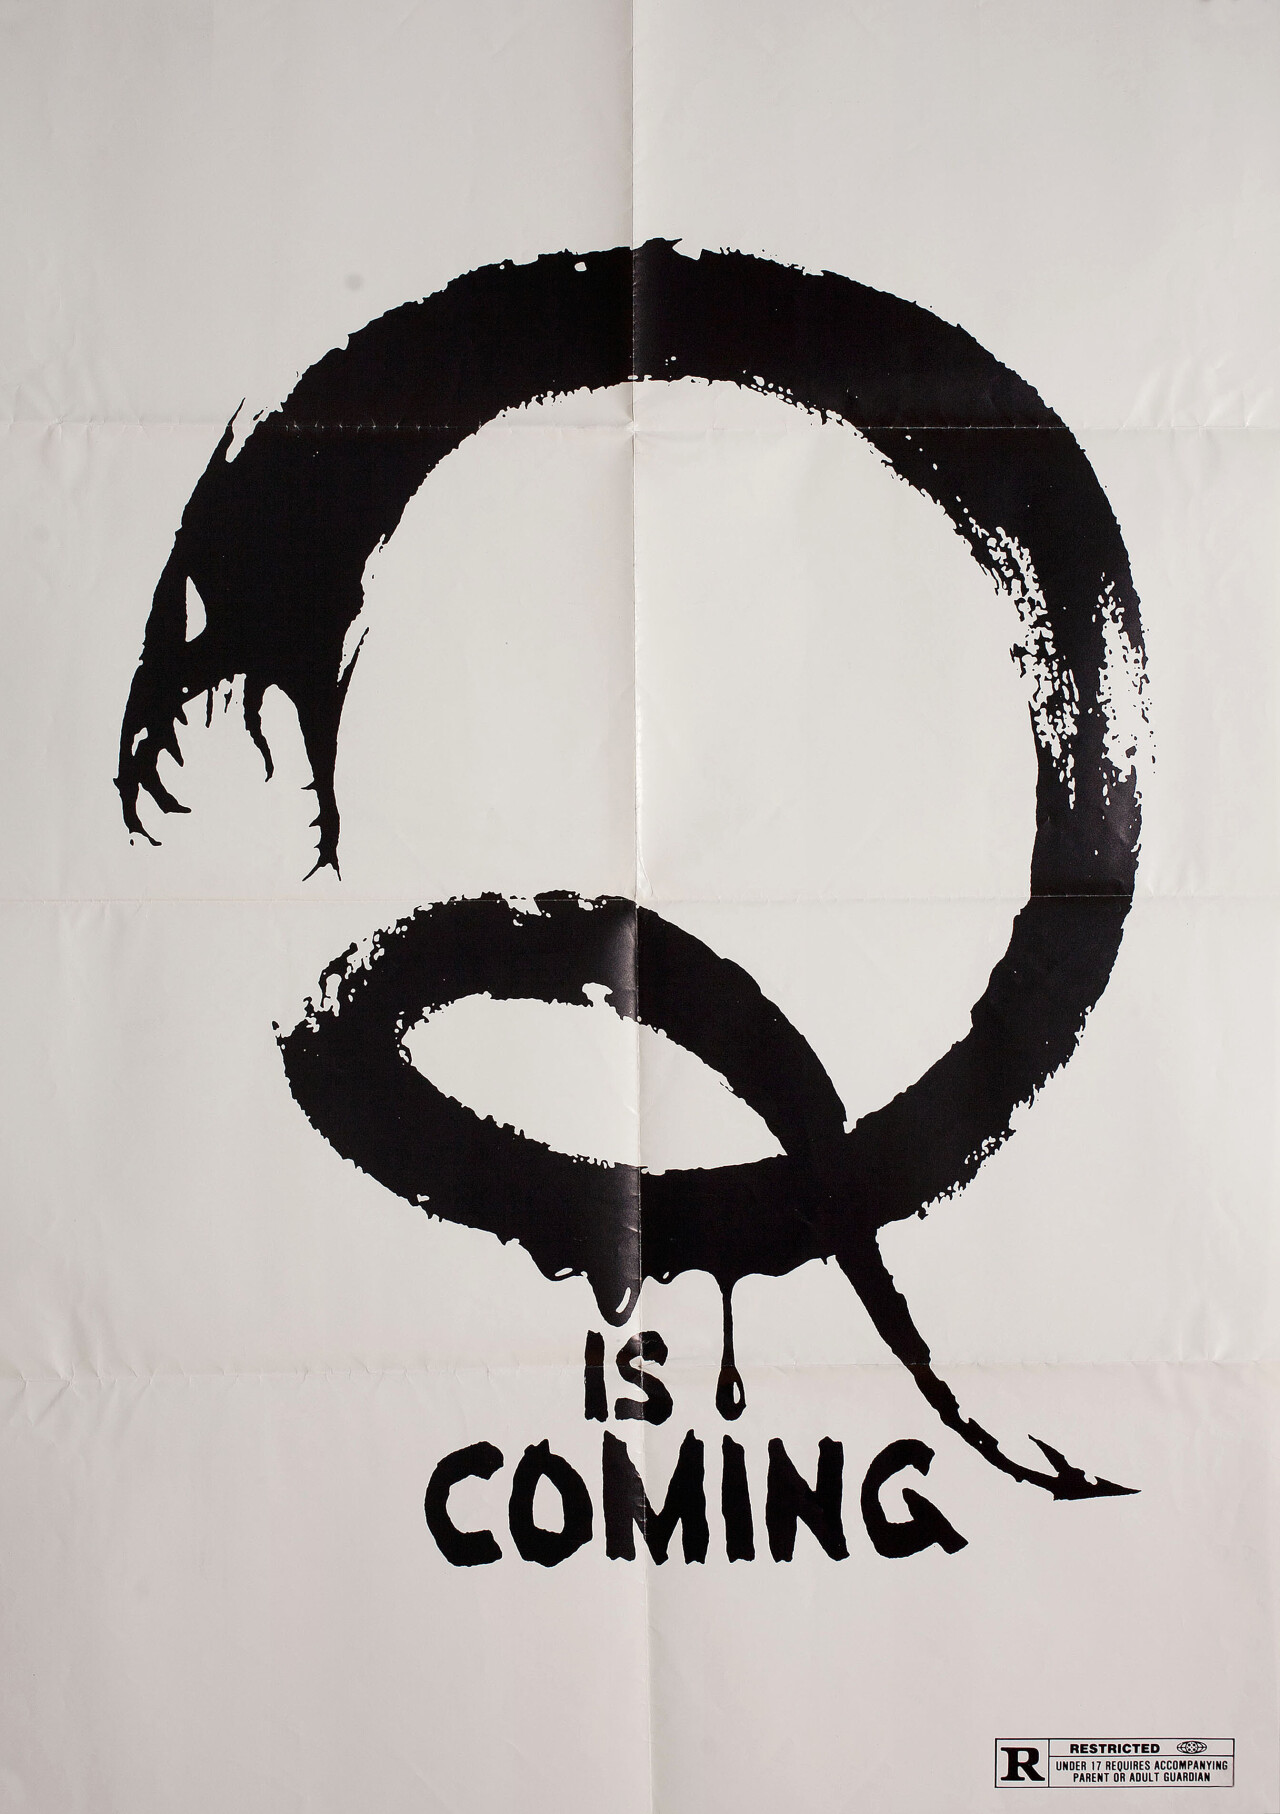 Кью (Q, 1982), режиссёр Ларри Коэн, американский постер к фильму (ужасы, 1982 год)